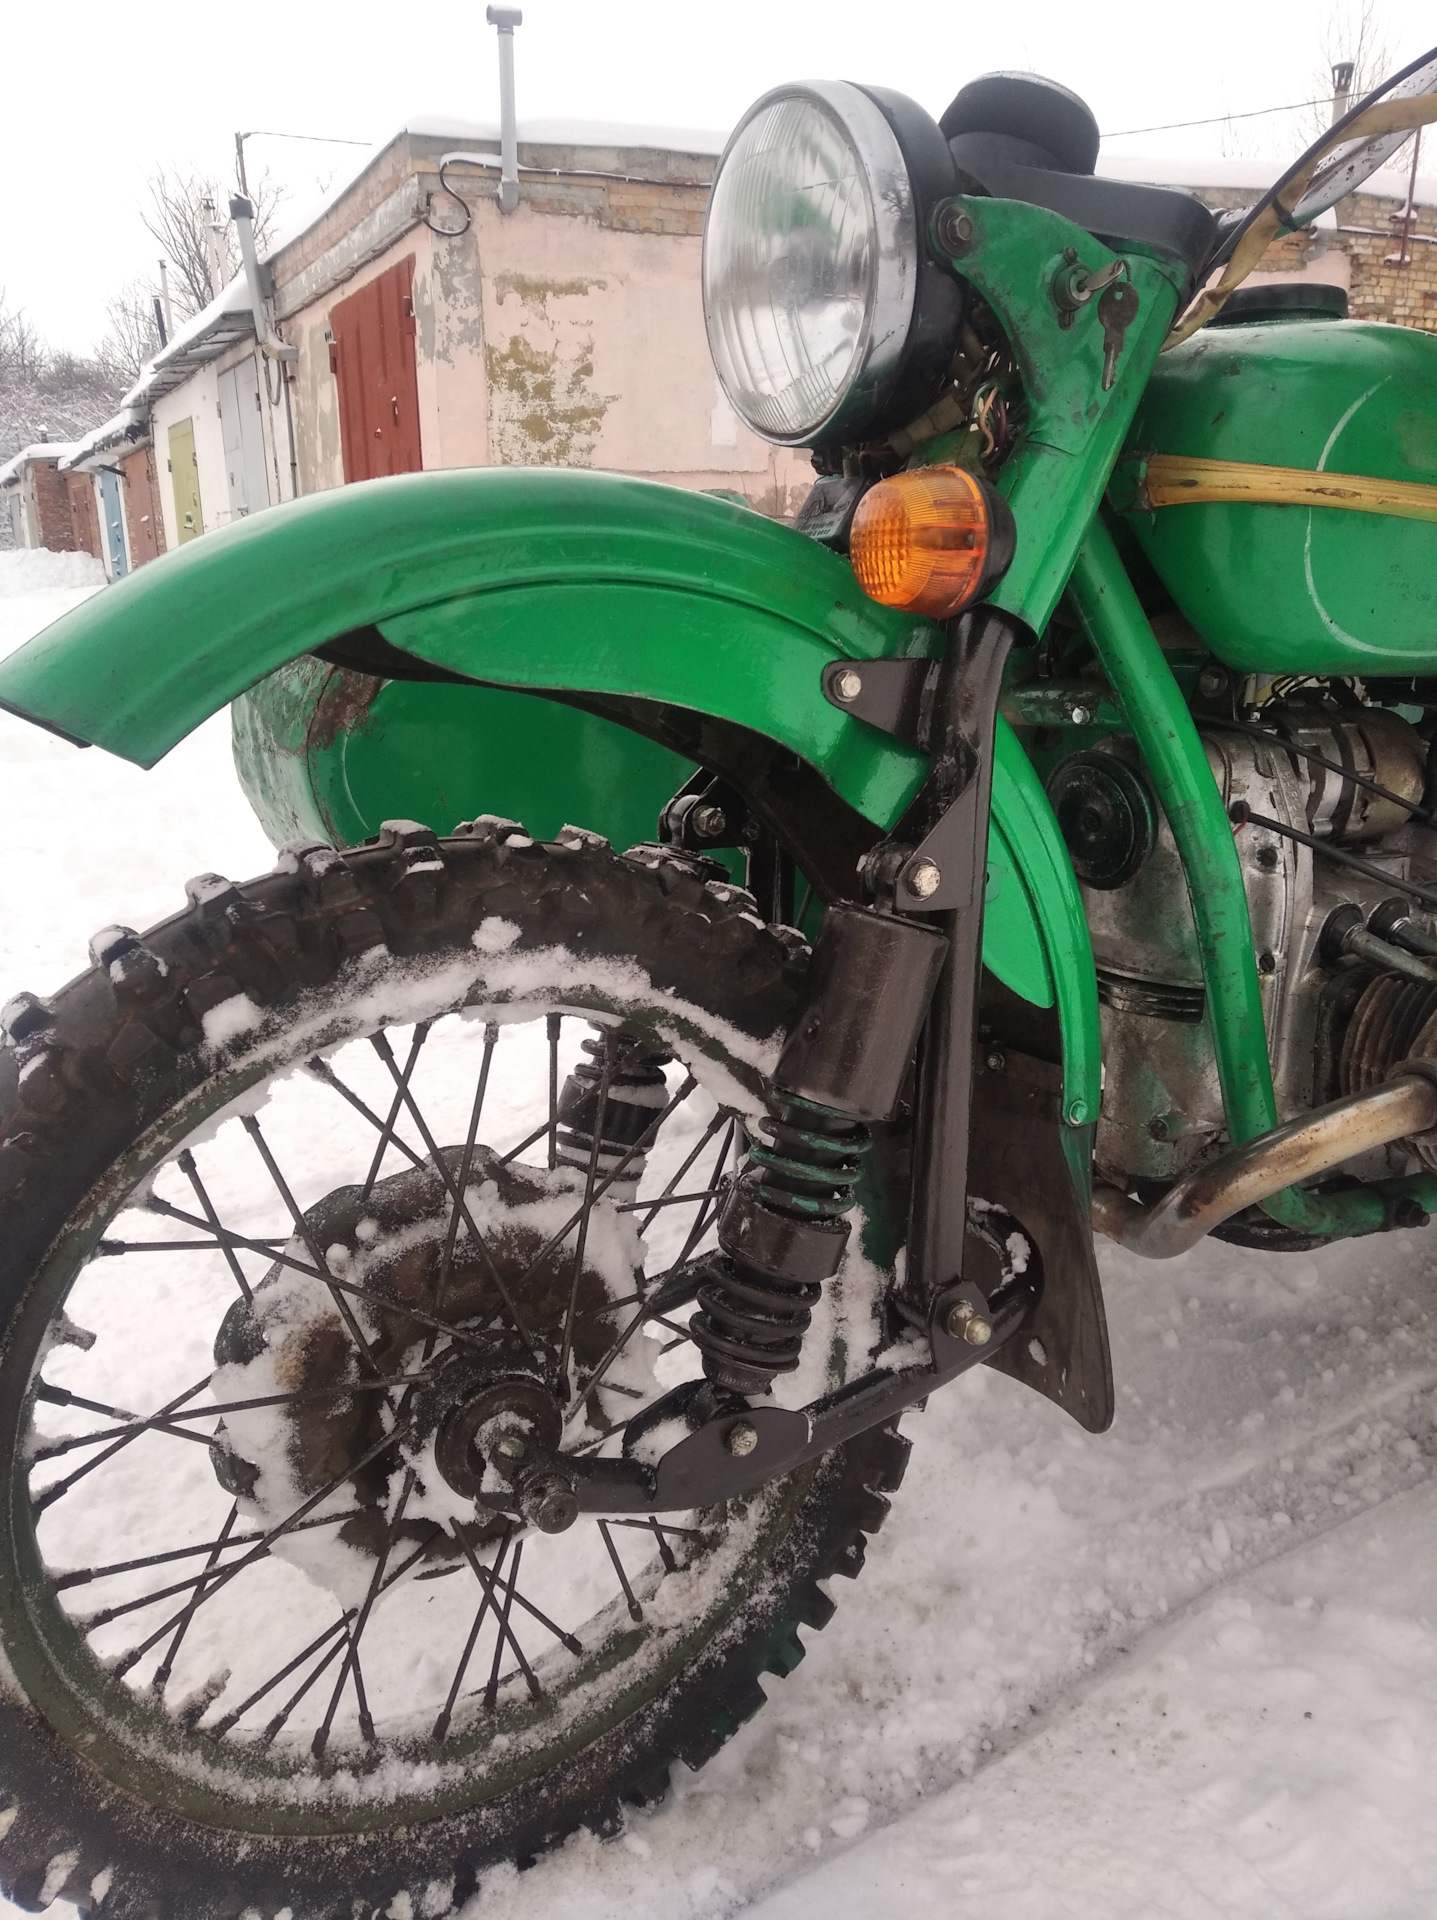 Тюнинг мотоцикла Урал своими руками